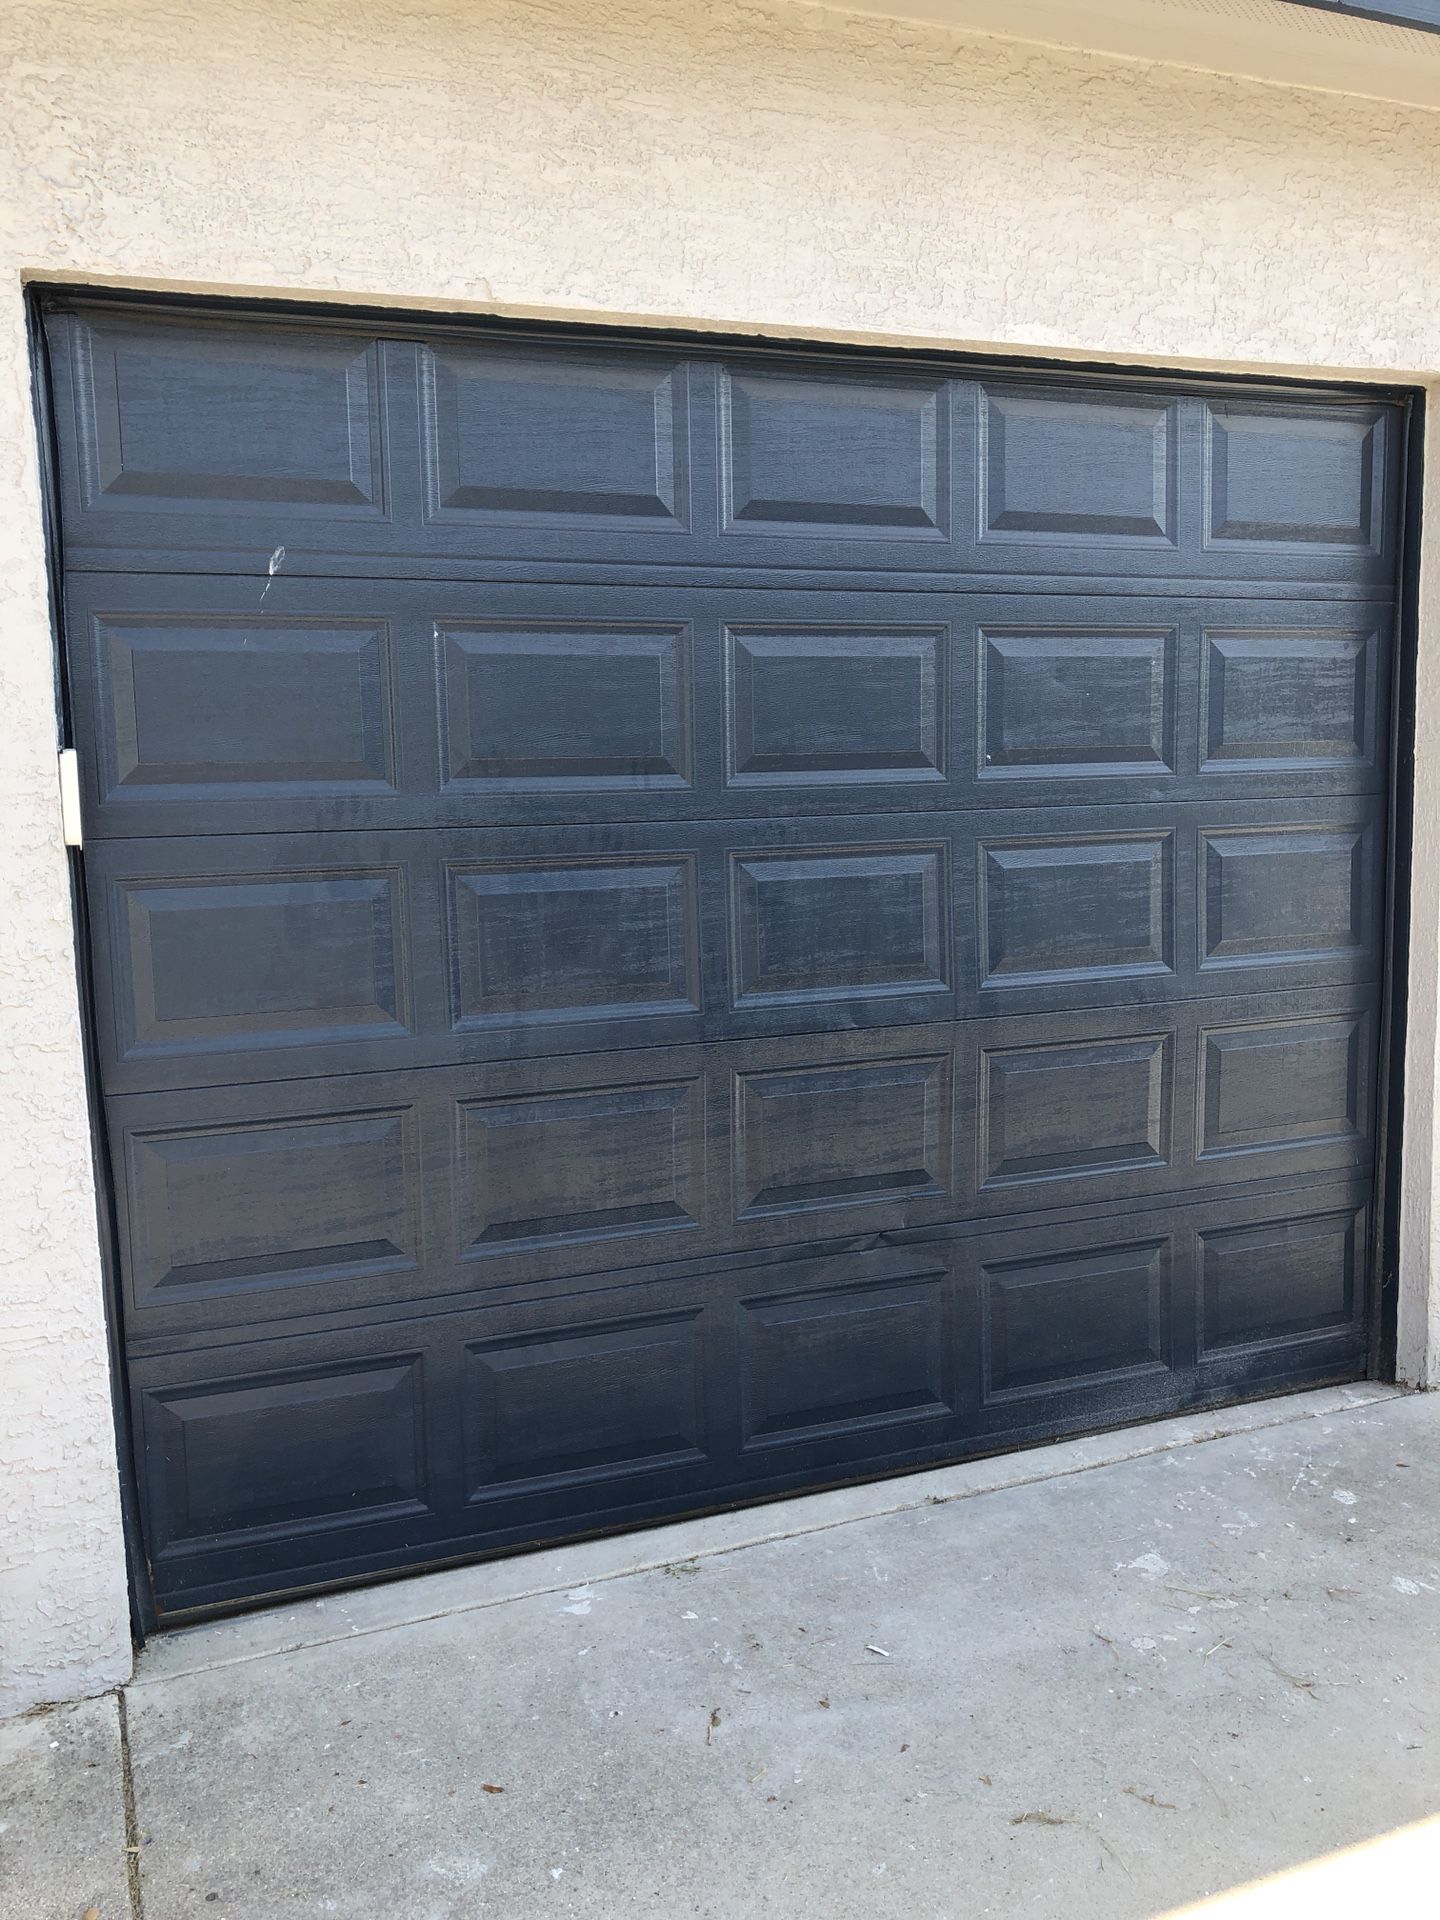 Single car garage door 9x7 and genie garage door open